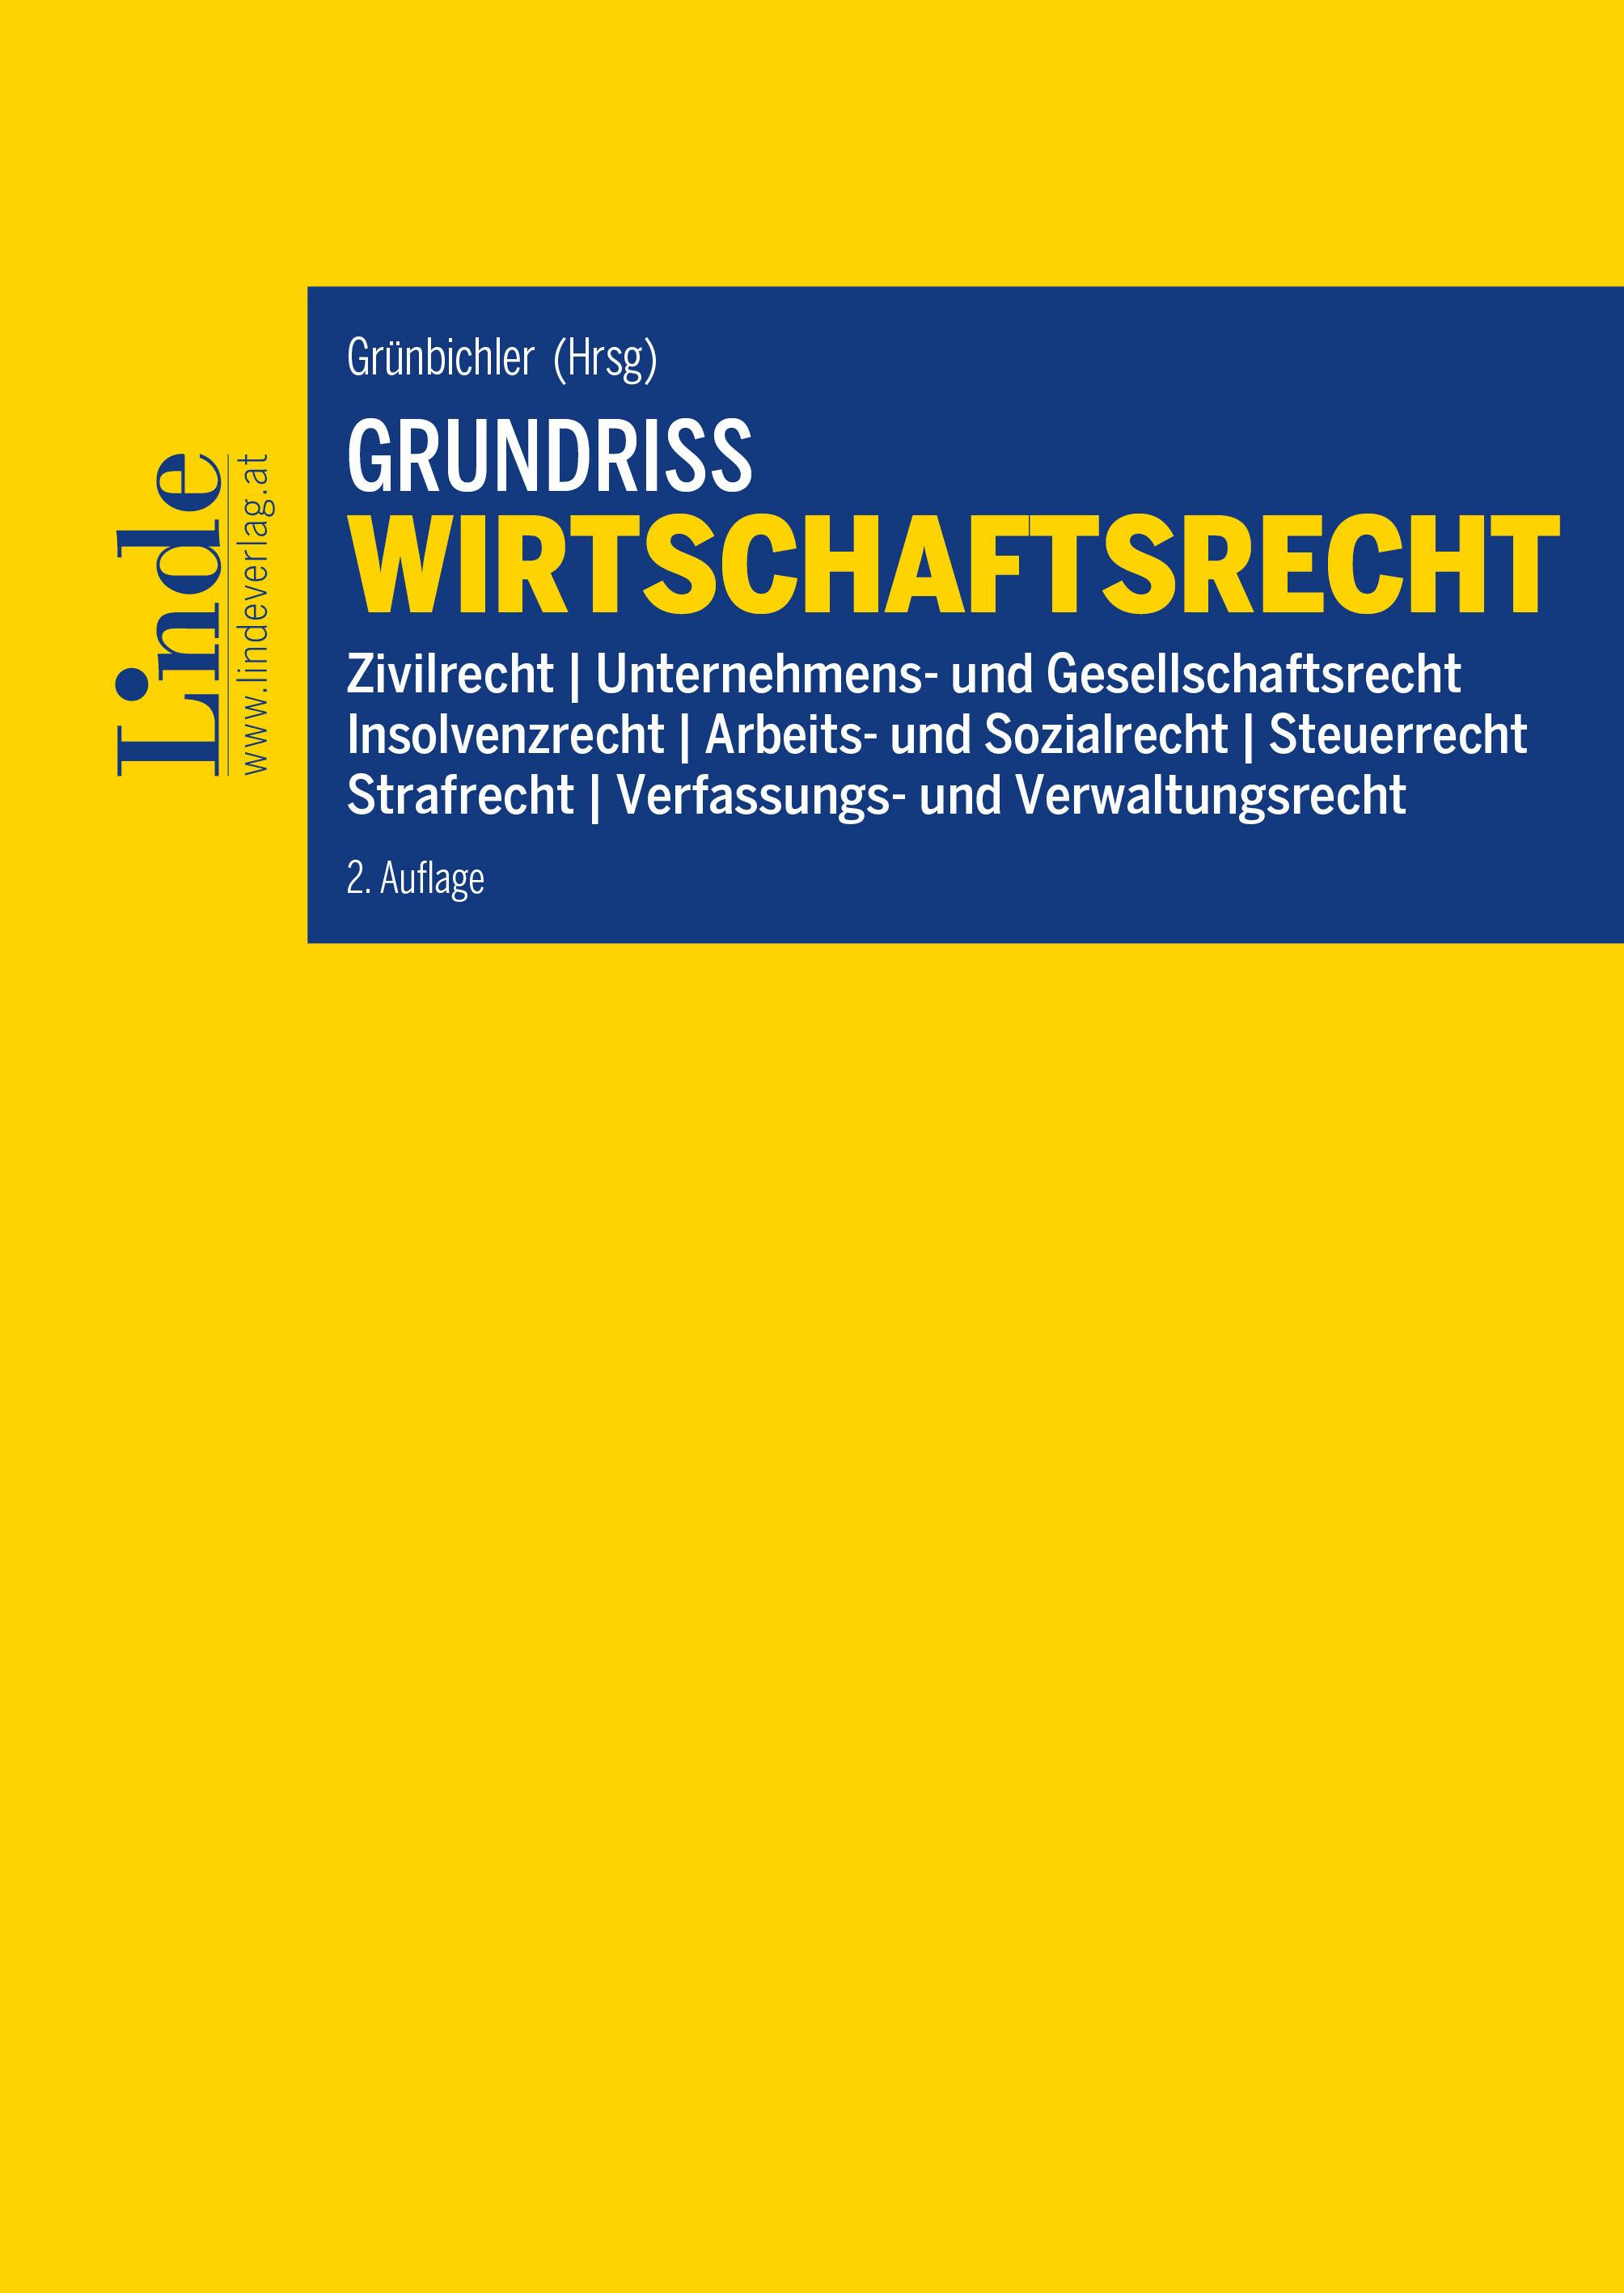 Grünbichler (Hrsg.)
Grundriss Wirtschaftsrecht
Linde Lehrbuch